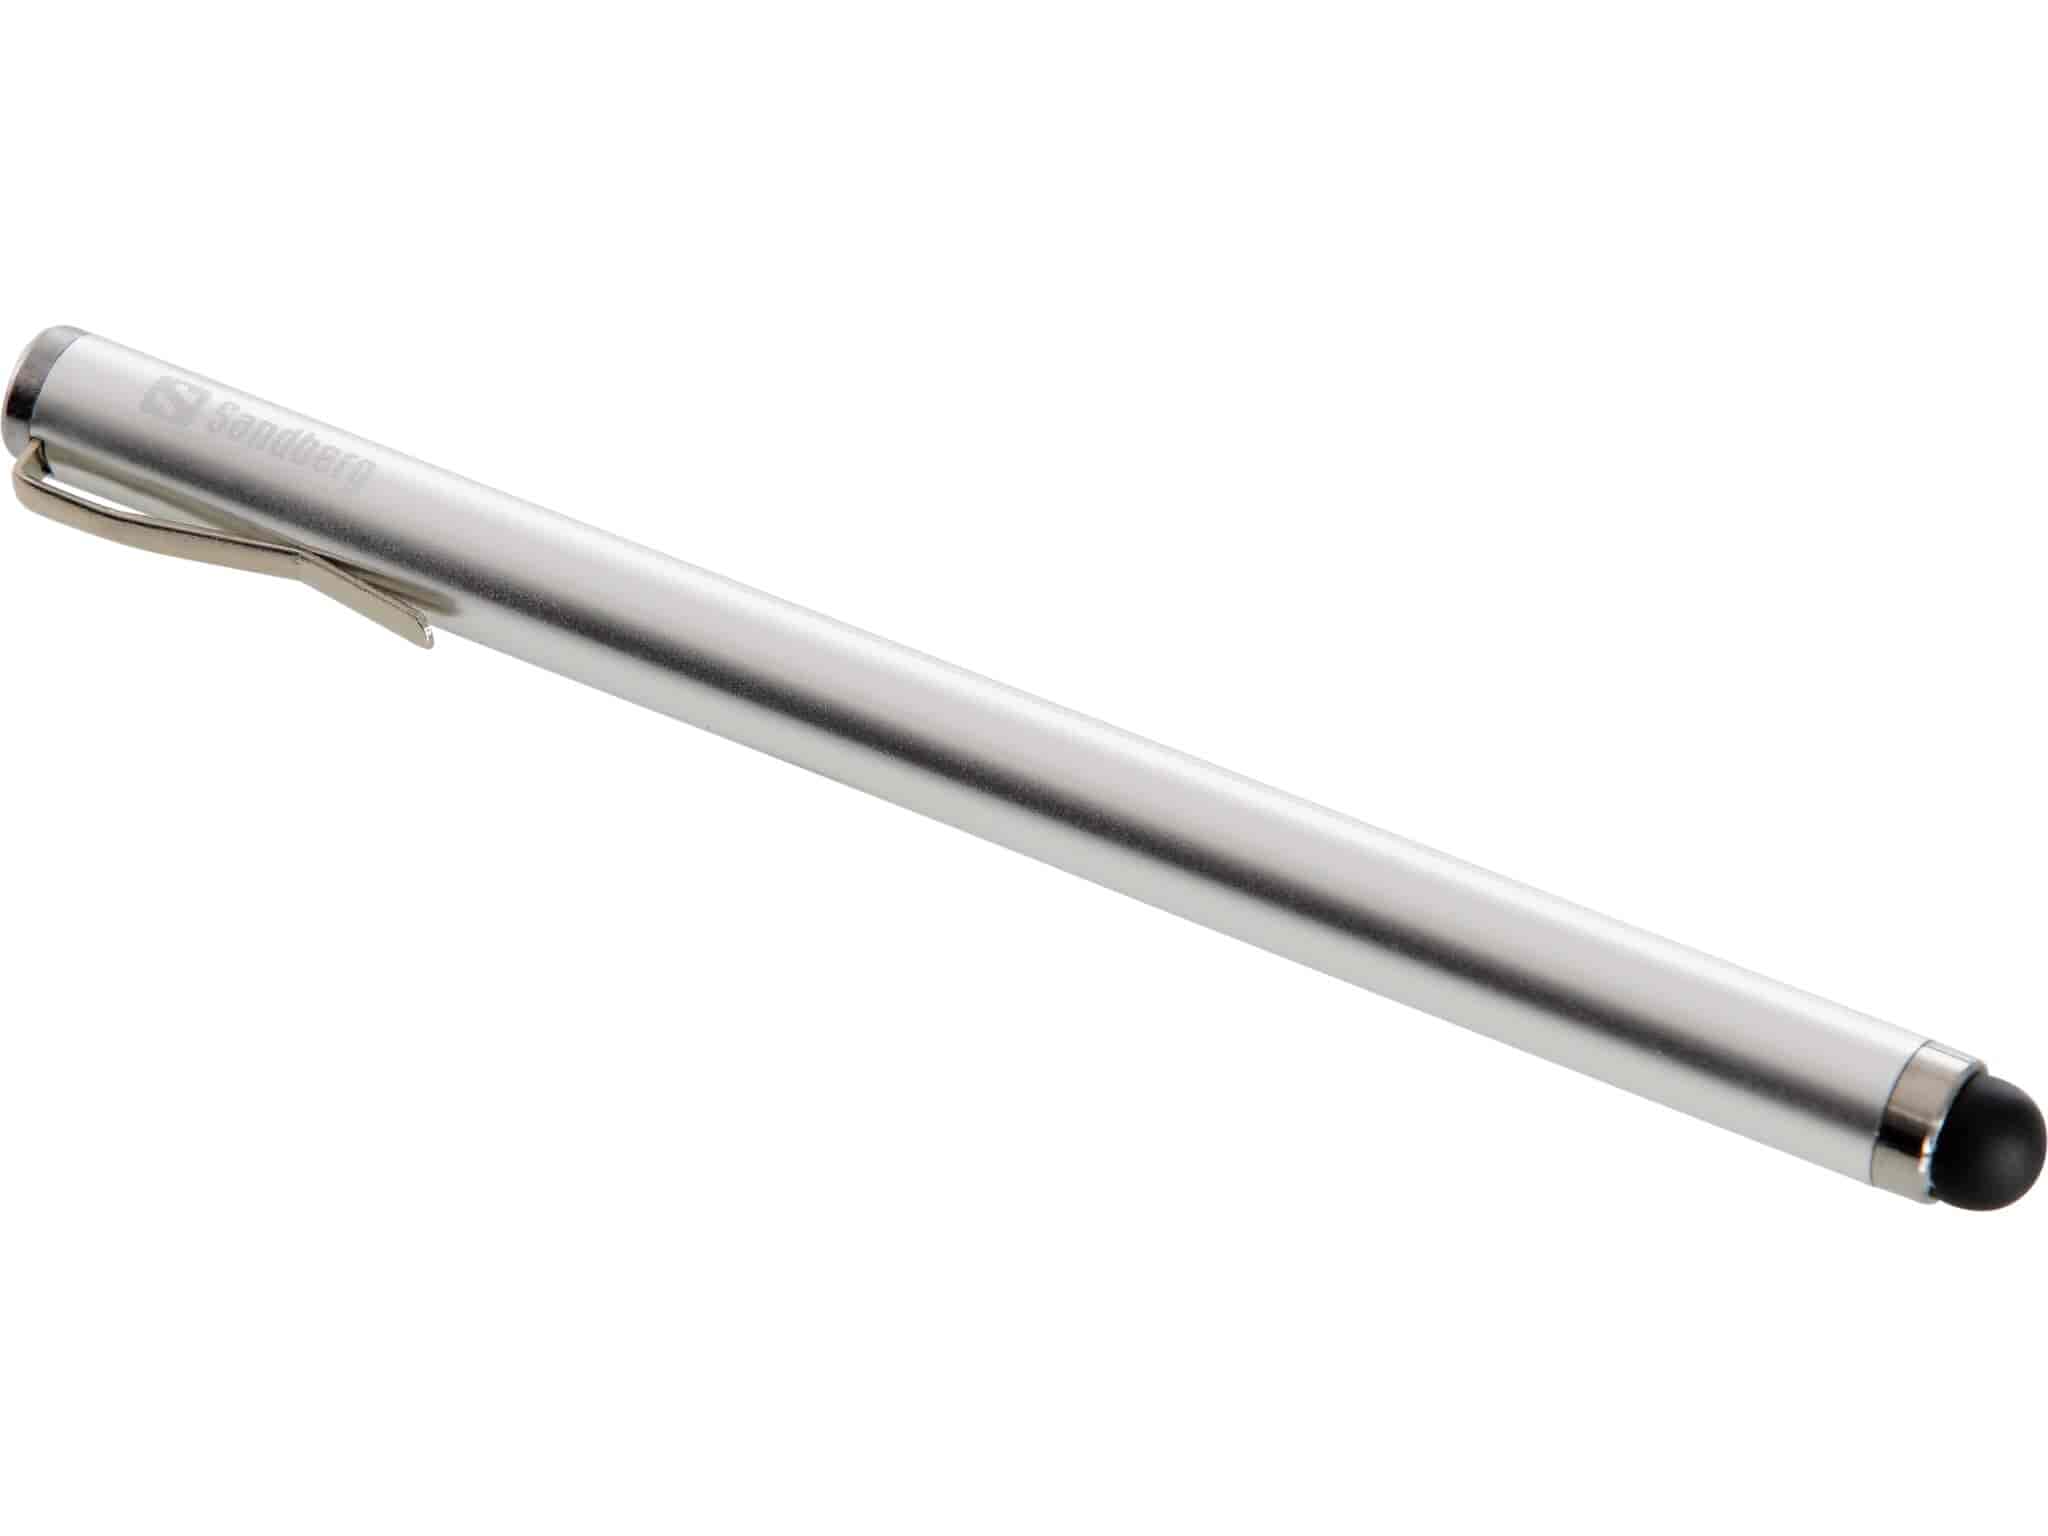 Sandberg Smartphone StylusSandbergStylus penne Med denne stylus pen rammer du bogstaverne præcist og hurtigt. Pennen er med dens kompakte størrelse og lækre aluminiumsfinish et perfekt match til din smartphone.